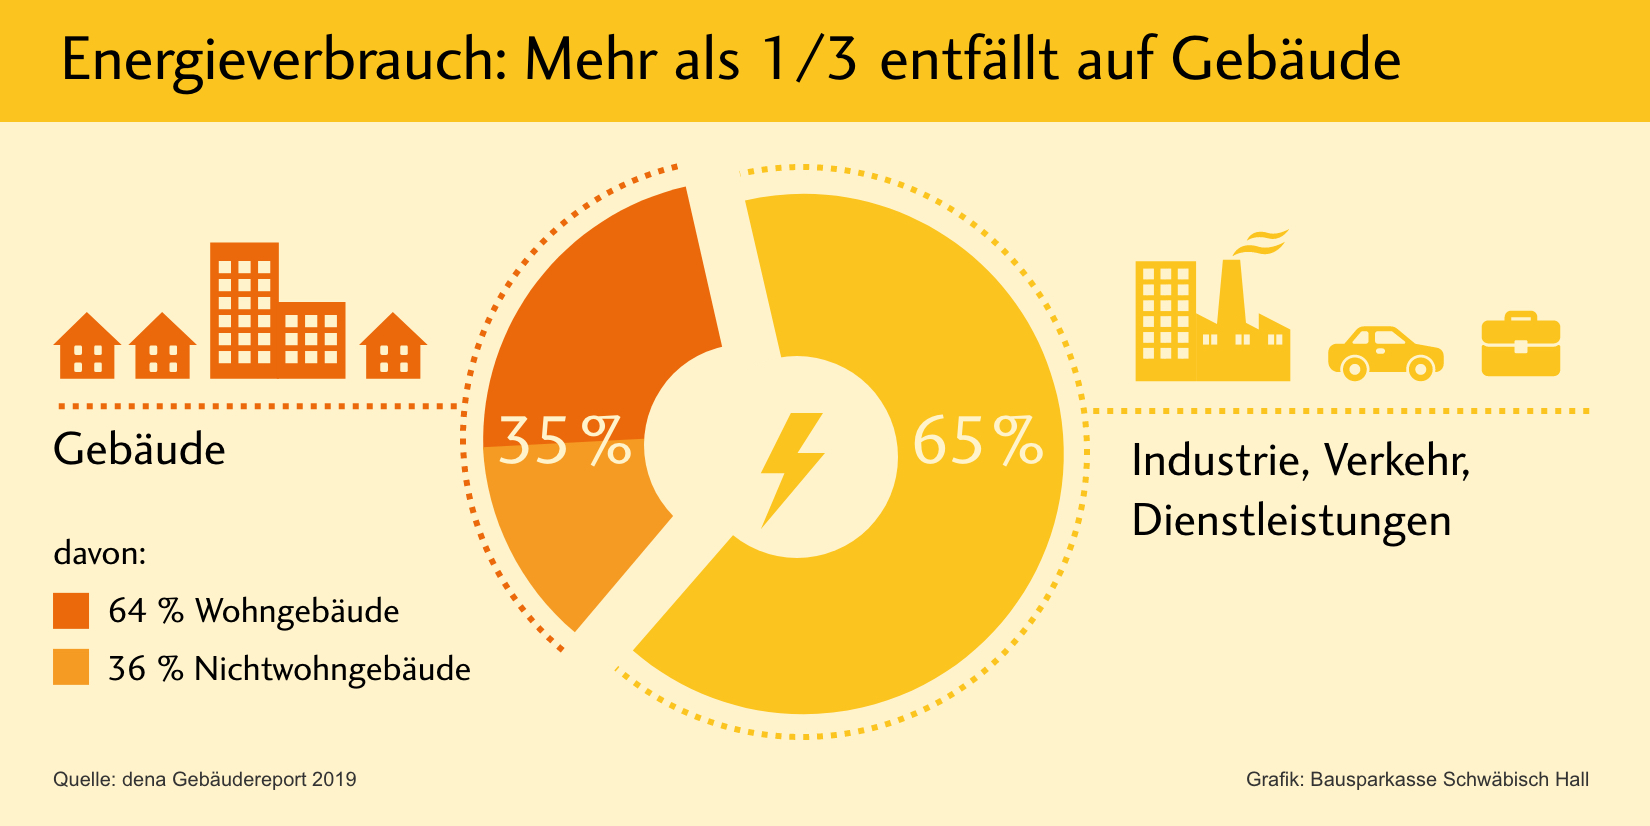 Der Immobiliensektor ist für mehr als ein Drittel des Energieverbrauchs in Deutschland verantwortlich – mehr als die Hälfte davon stammt von Wohngebäuden. Hinzu kommt: Immobilien verursachen rund 30 Prozent der CO2-Emissionen.